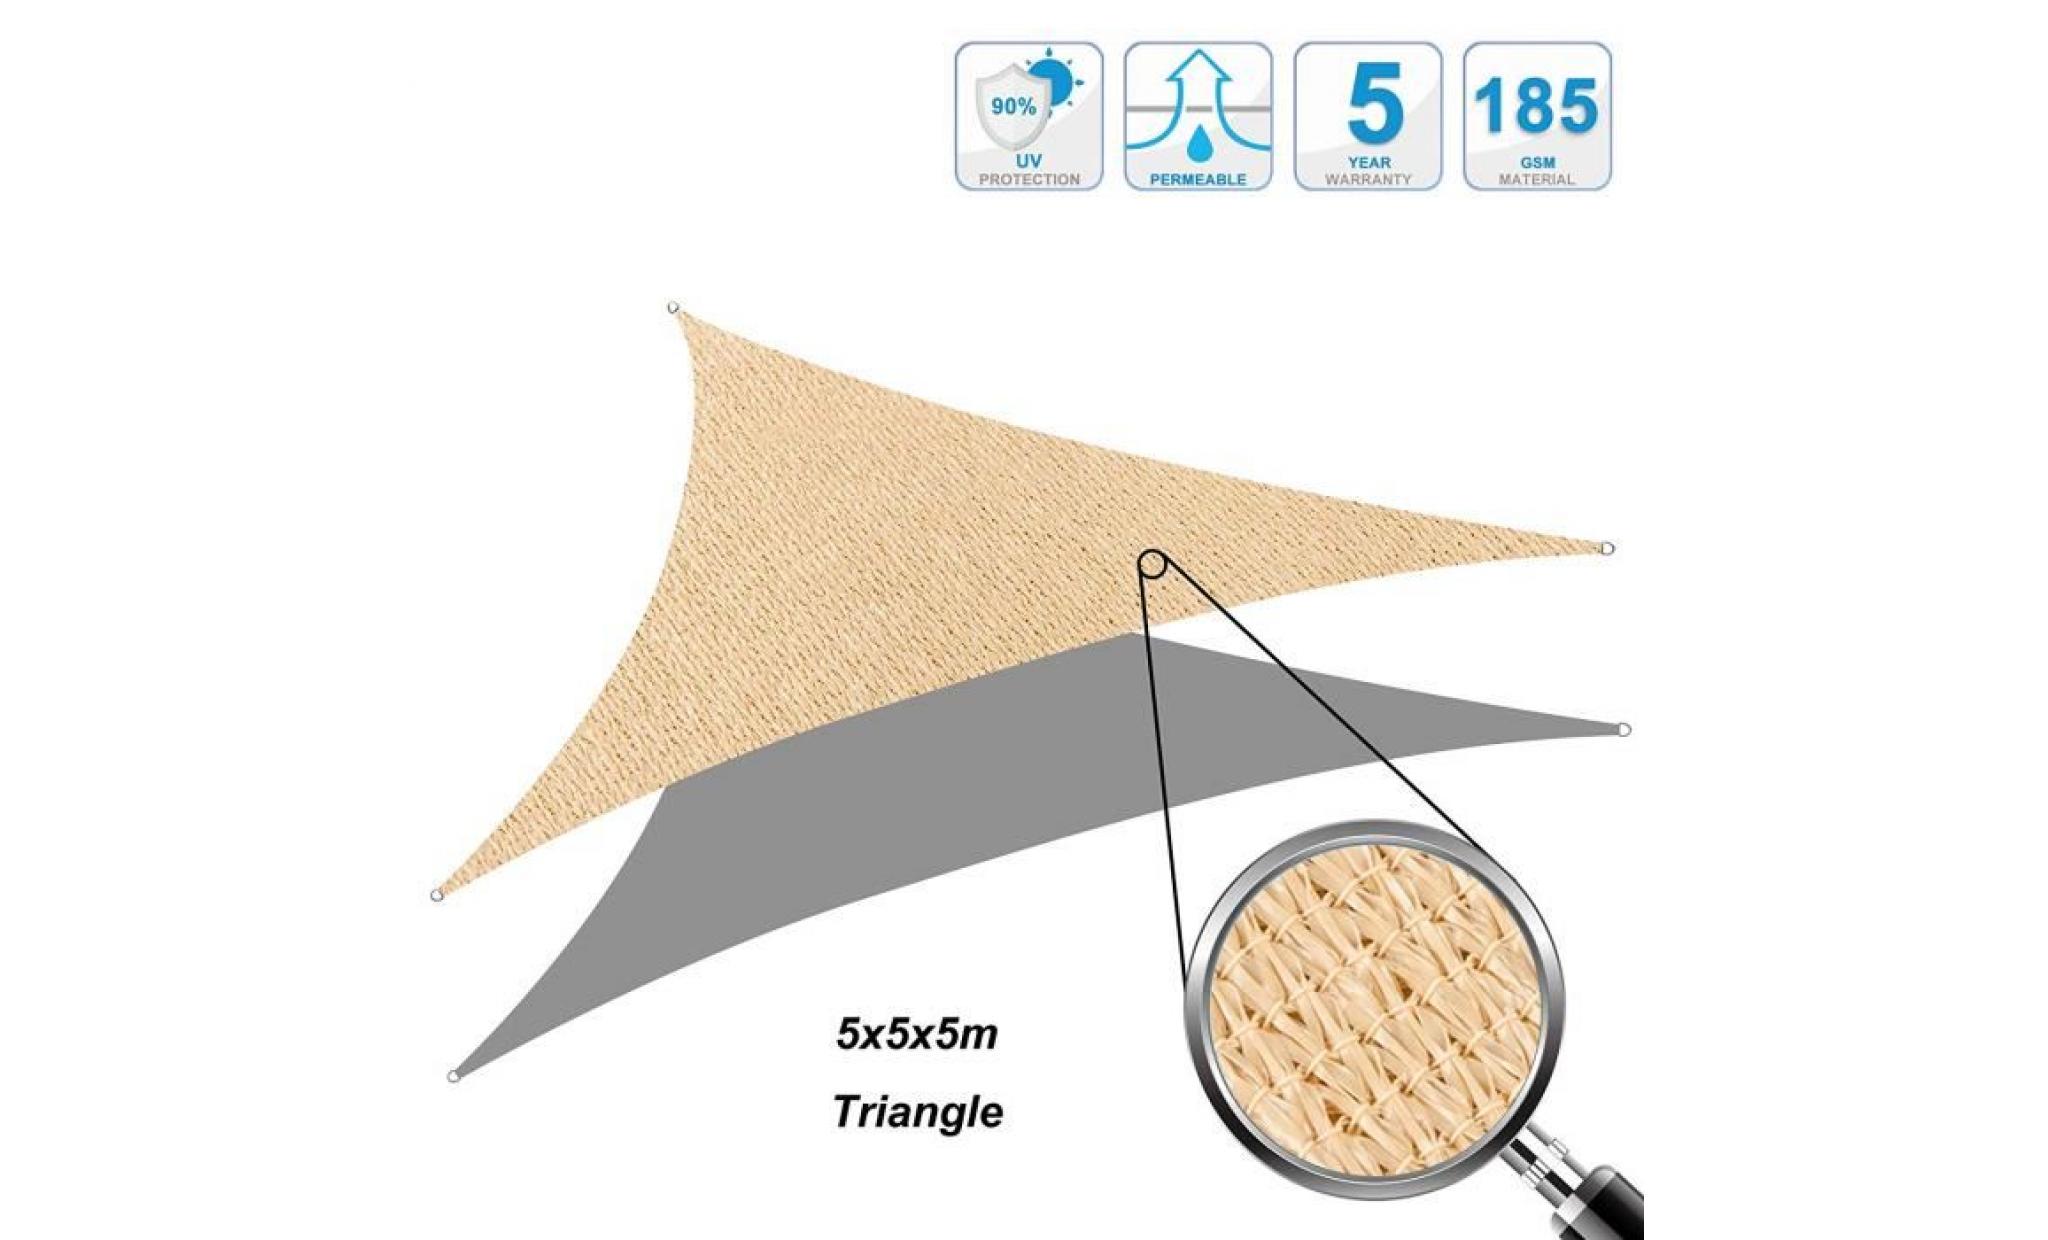 voile d'ombrage cool area   voile solaire triangulaire  5x5x5m   protection des rayons uv résistant et respirante   couleur sable